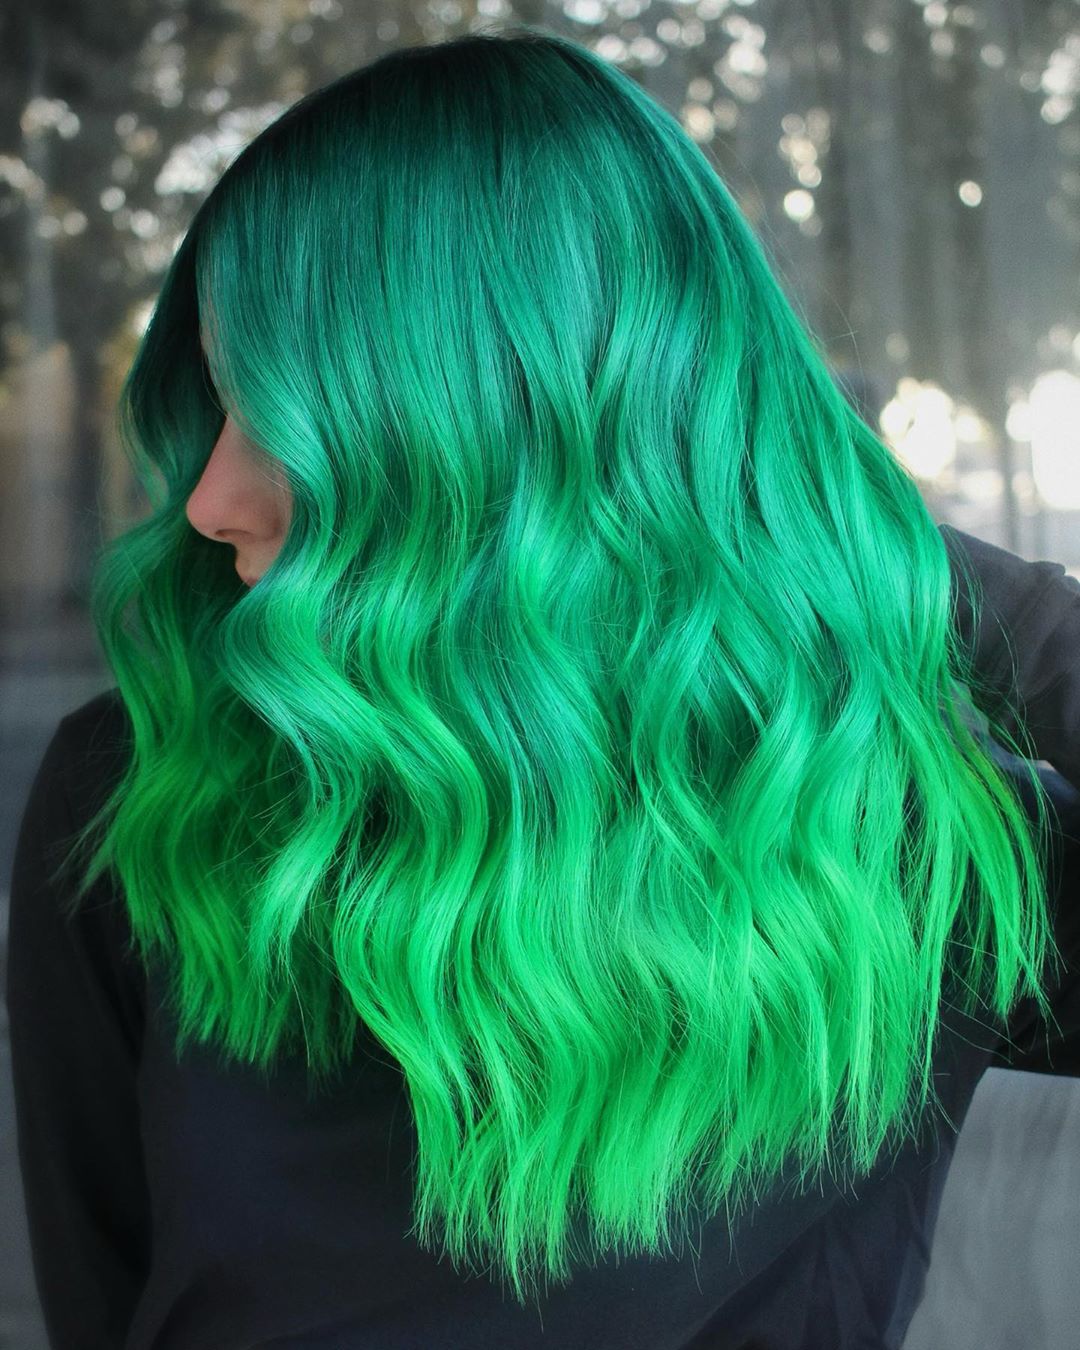 Mujer con cabello verde en degradado de turquesa a neón